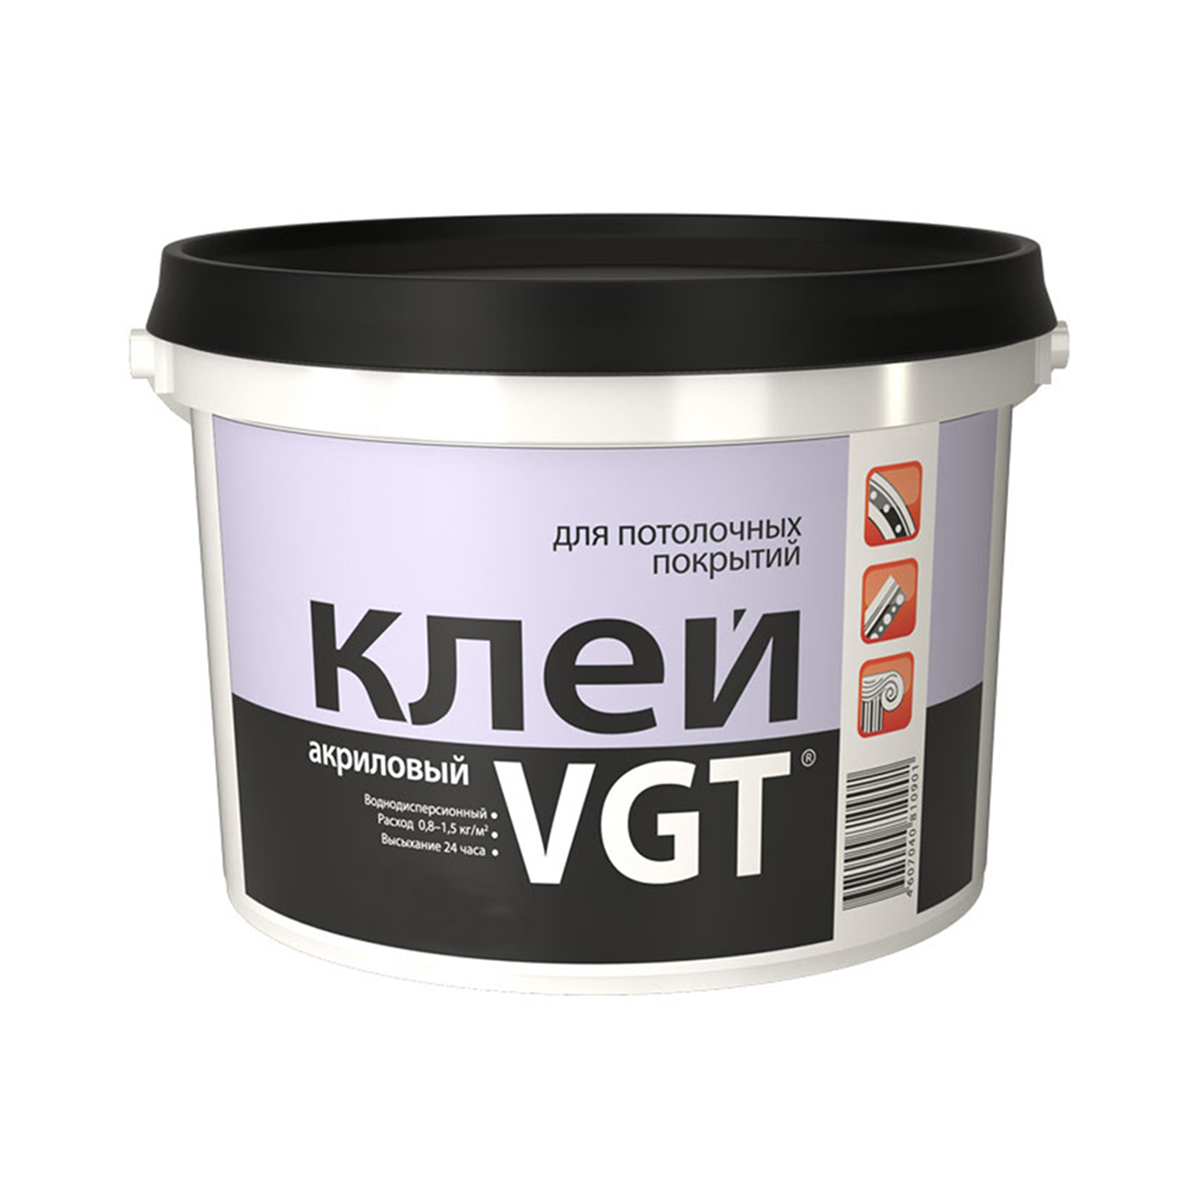 Клей для потолочных покрытий VGT, акриловый, 0,5 кг клей для напольных покрытий homakoll 208 14 кг